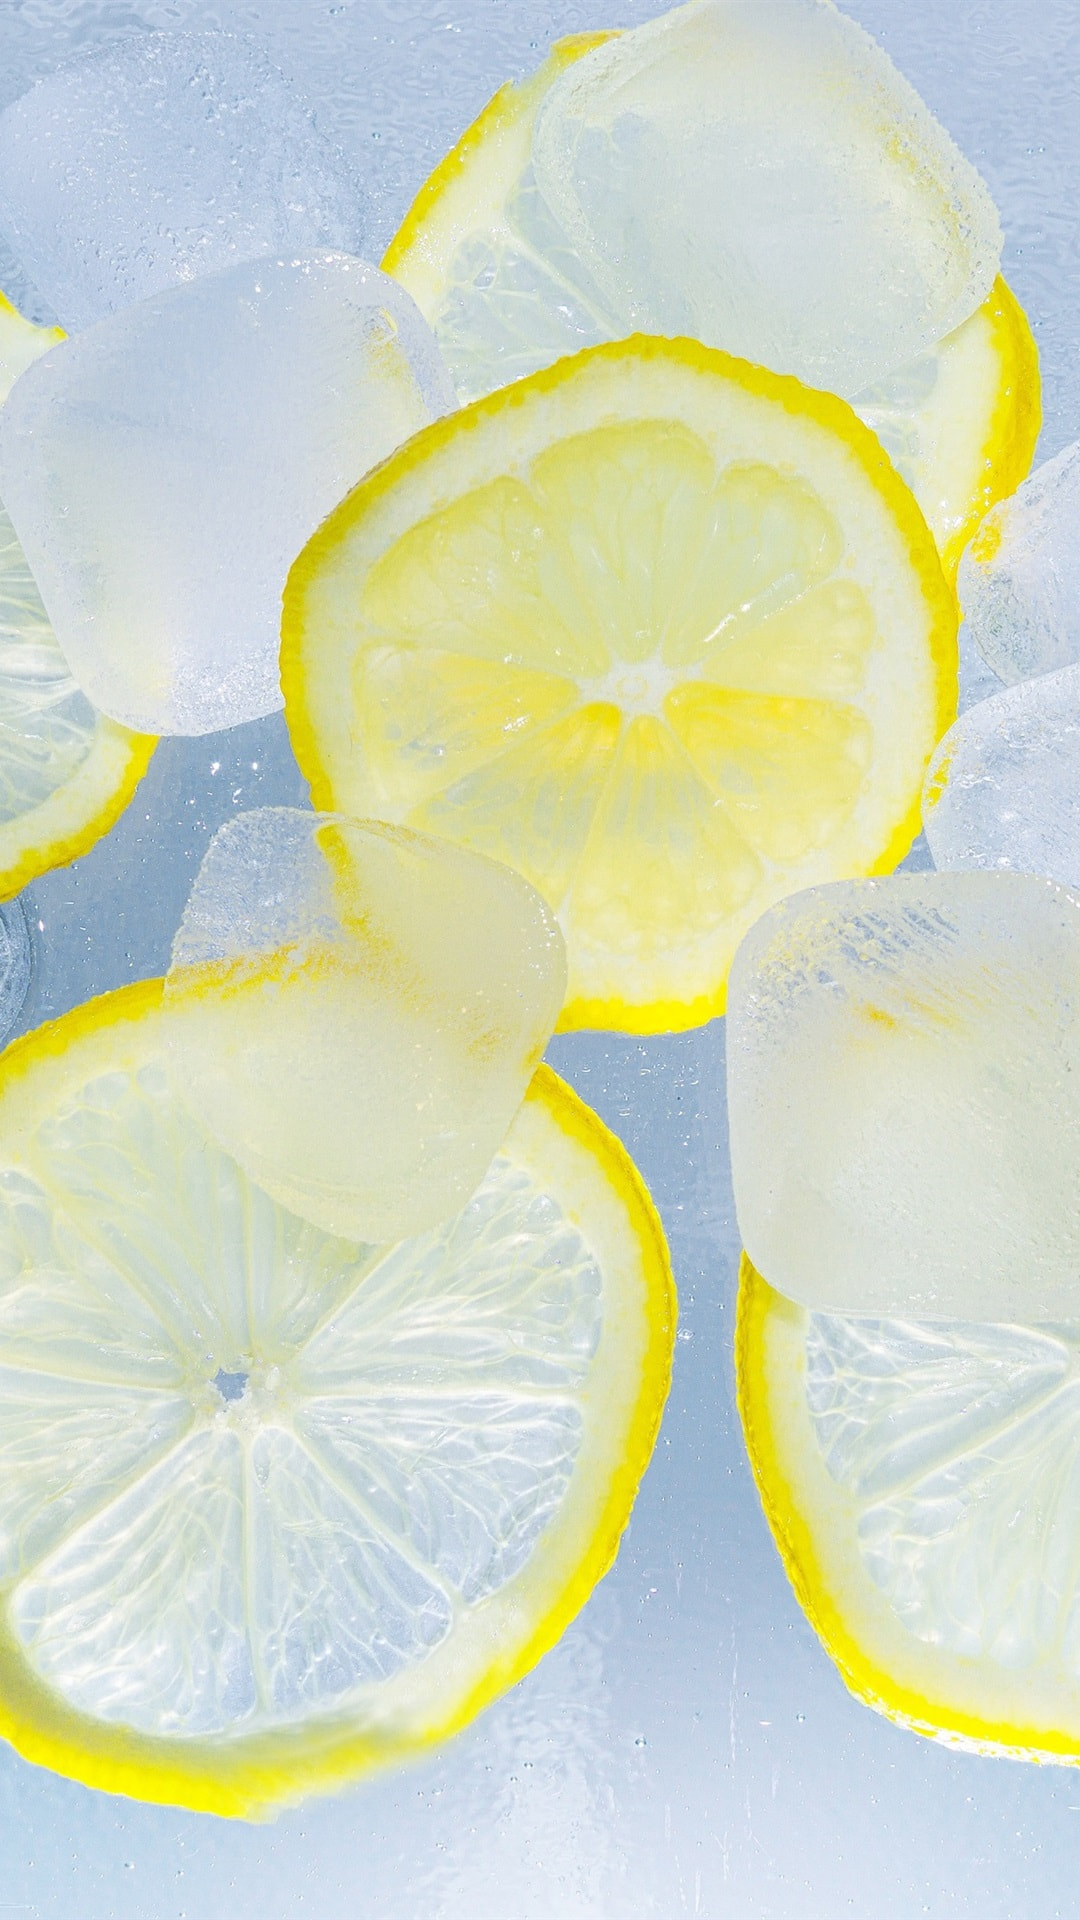 レモンの輪切りと氷 Iphone Wallpapers